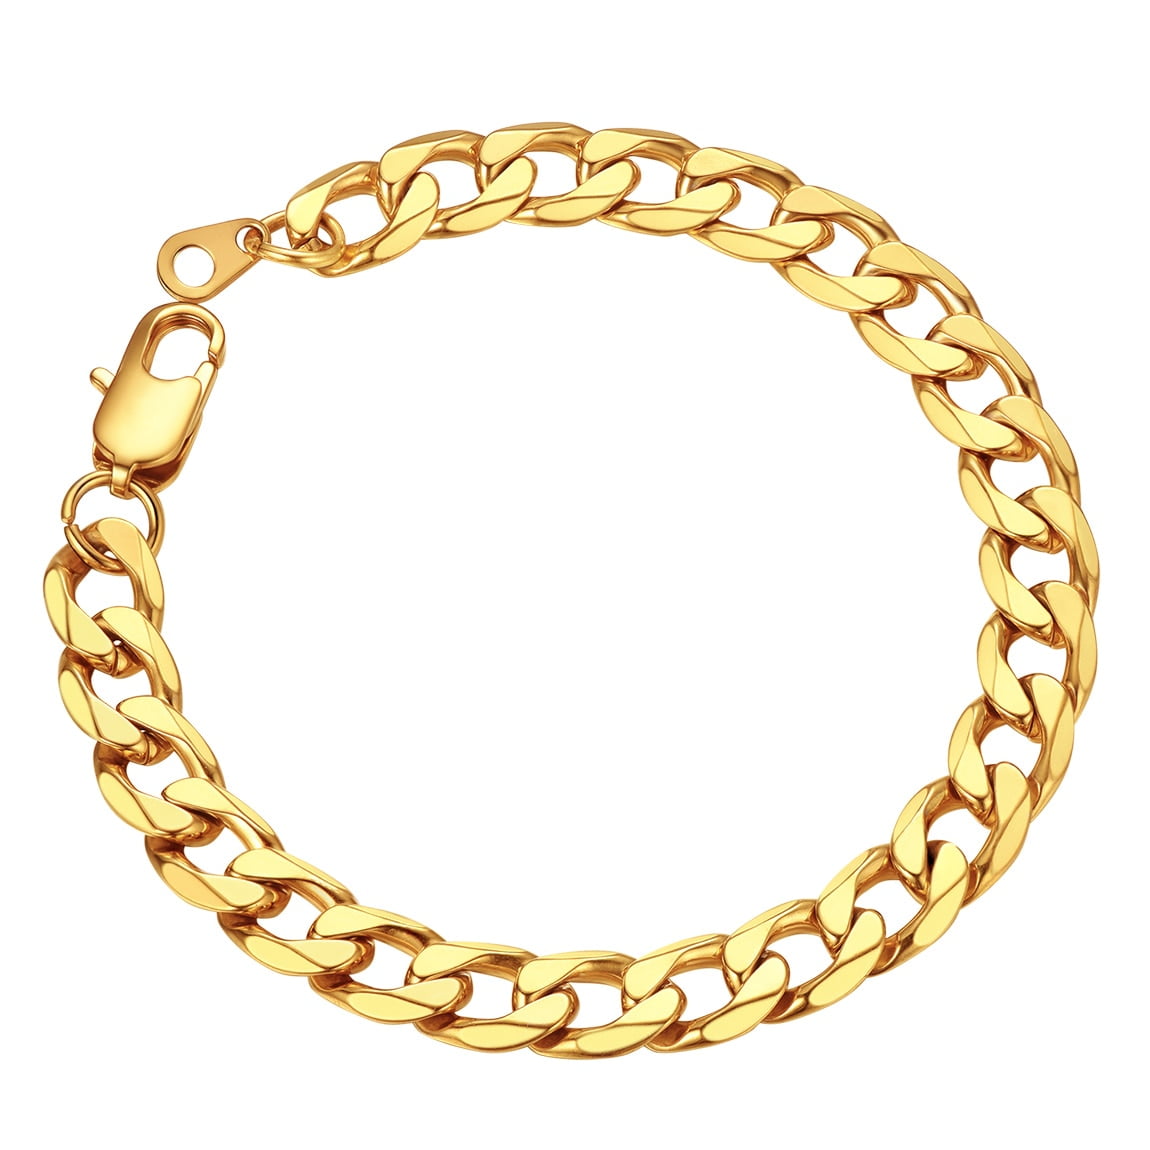  Gold Chain Bracelets for Men, Cuban Link Bracelet for